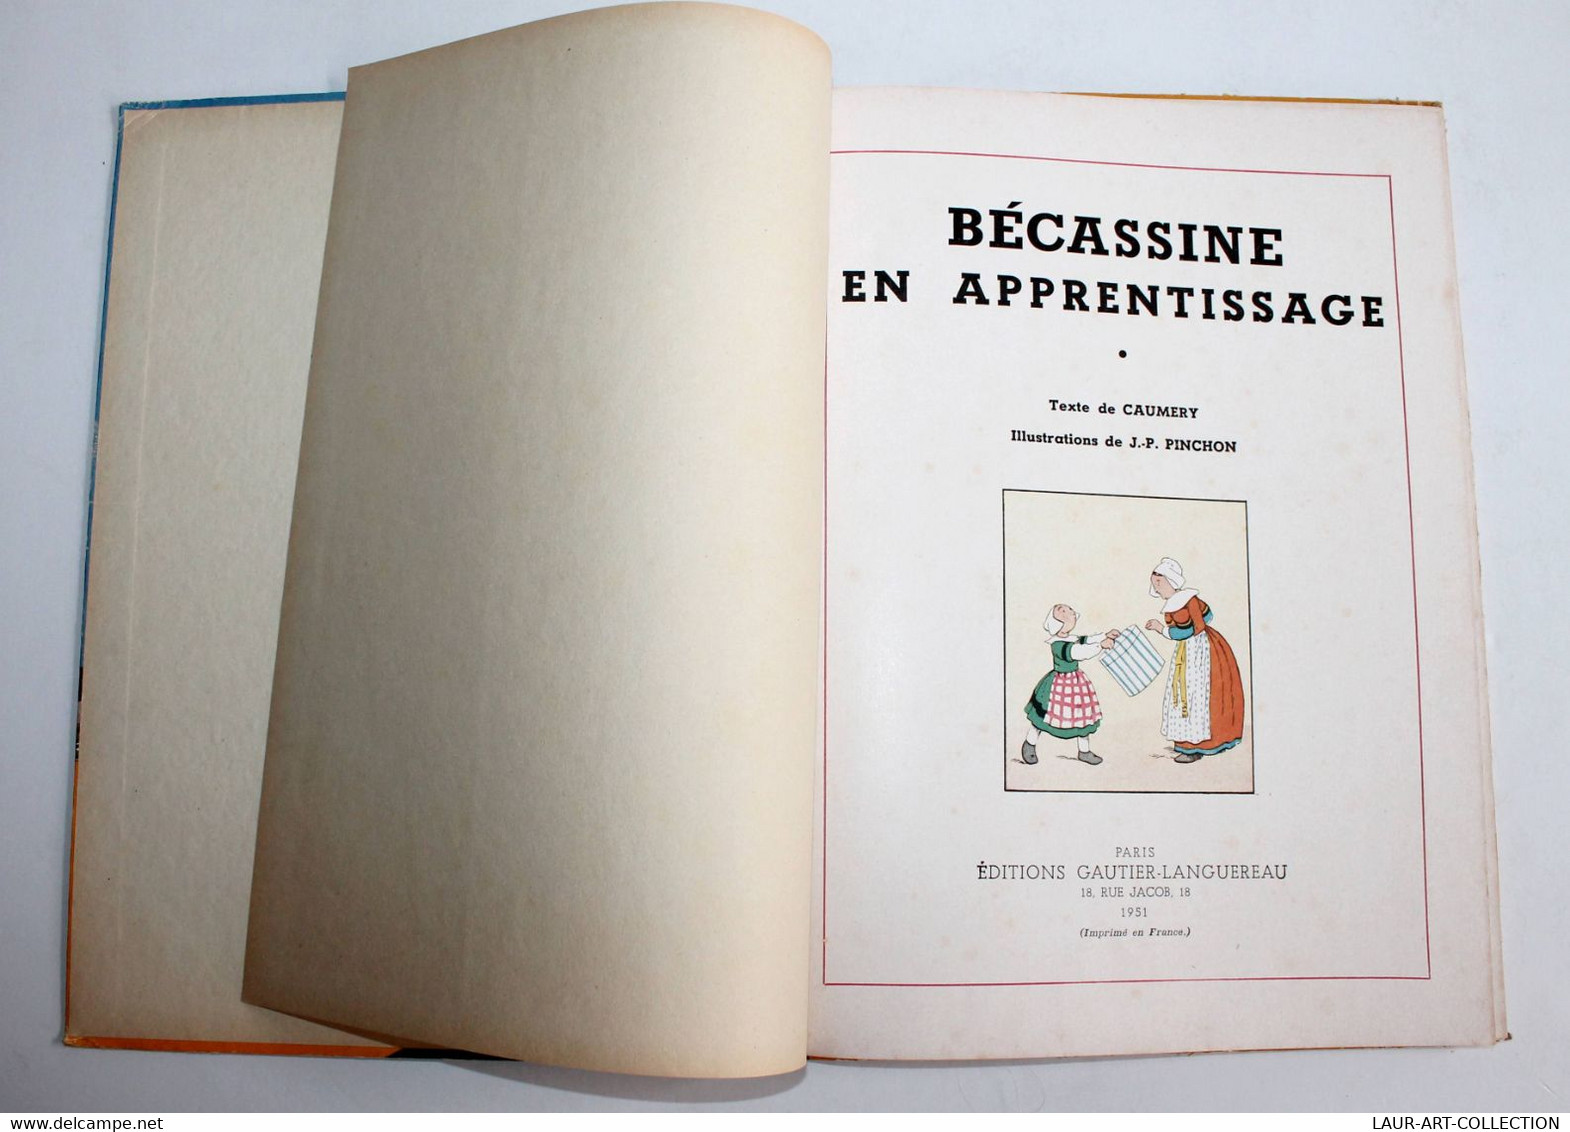 BECASSINE EN APPRENTISSAGE De CAUMERY, ILLUSTRATION PINCHON 1951 GAUTIER-LANGUER / ANCIEN LIVRE DE COLLECTION (3008.84) - Bécassine